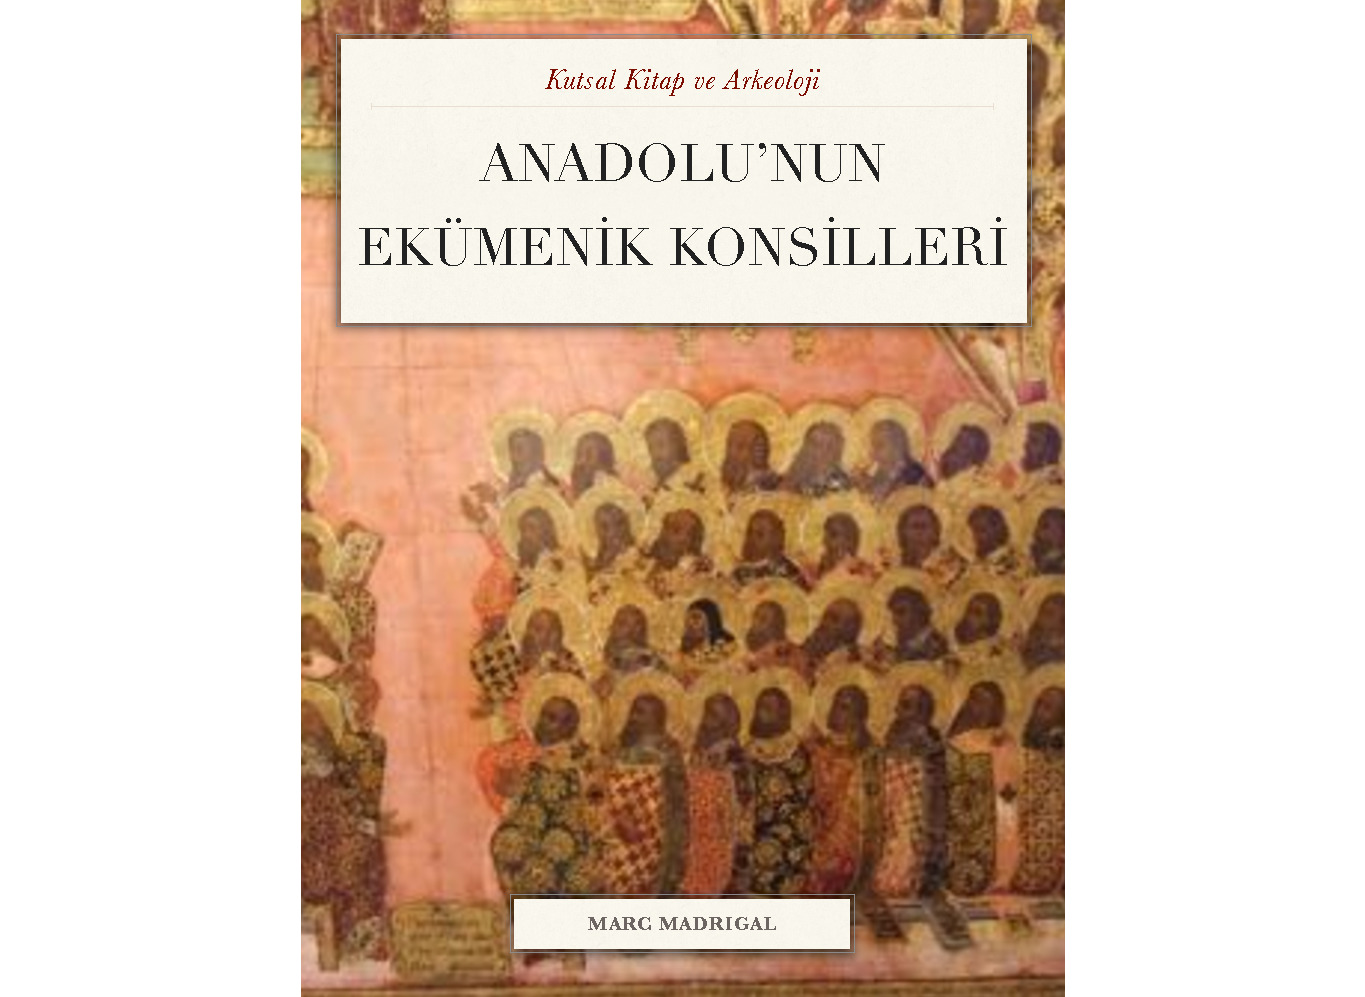 Anadolunun Ekumenik Konsilleri-Marc Madrigal-2014-27s